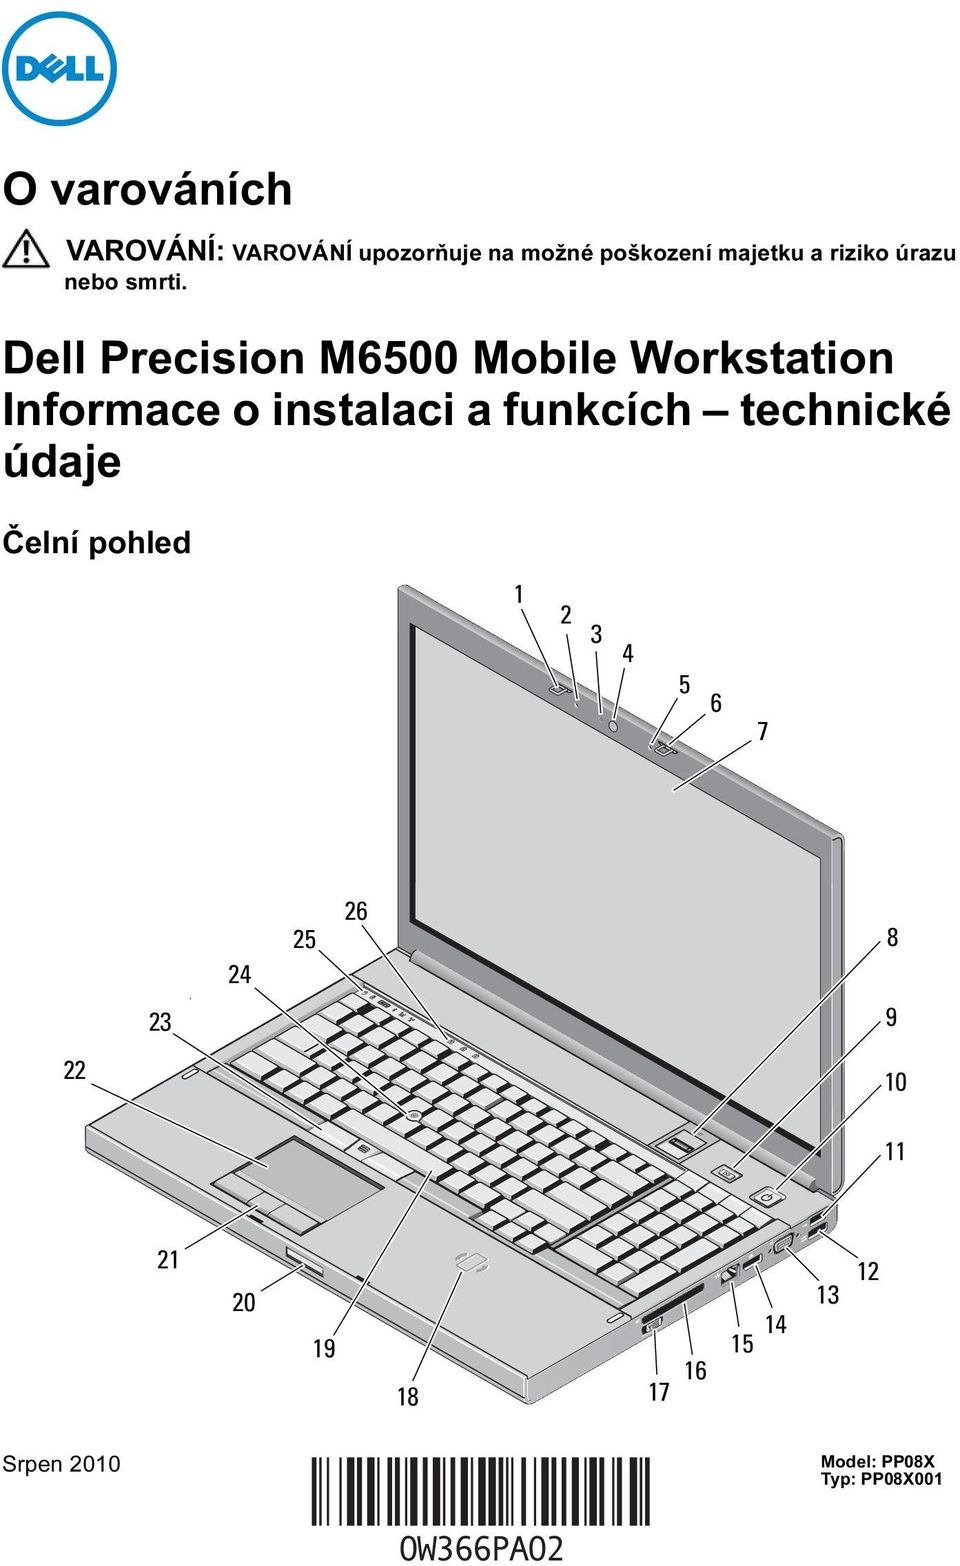 Dell Precision M6500 Mobile Workstation Informace o instalaci a funkcích